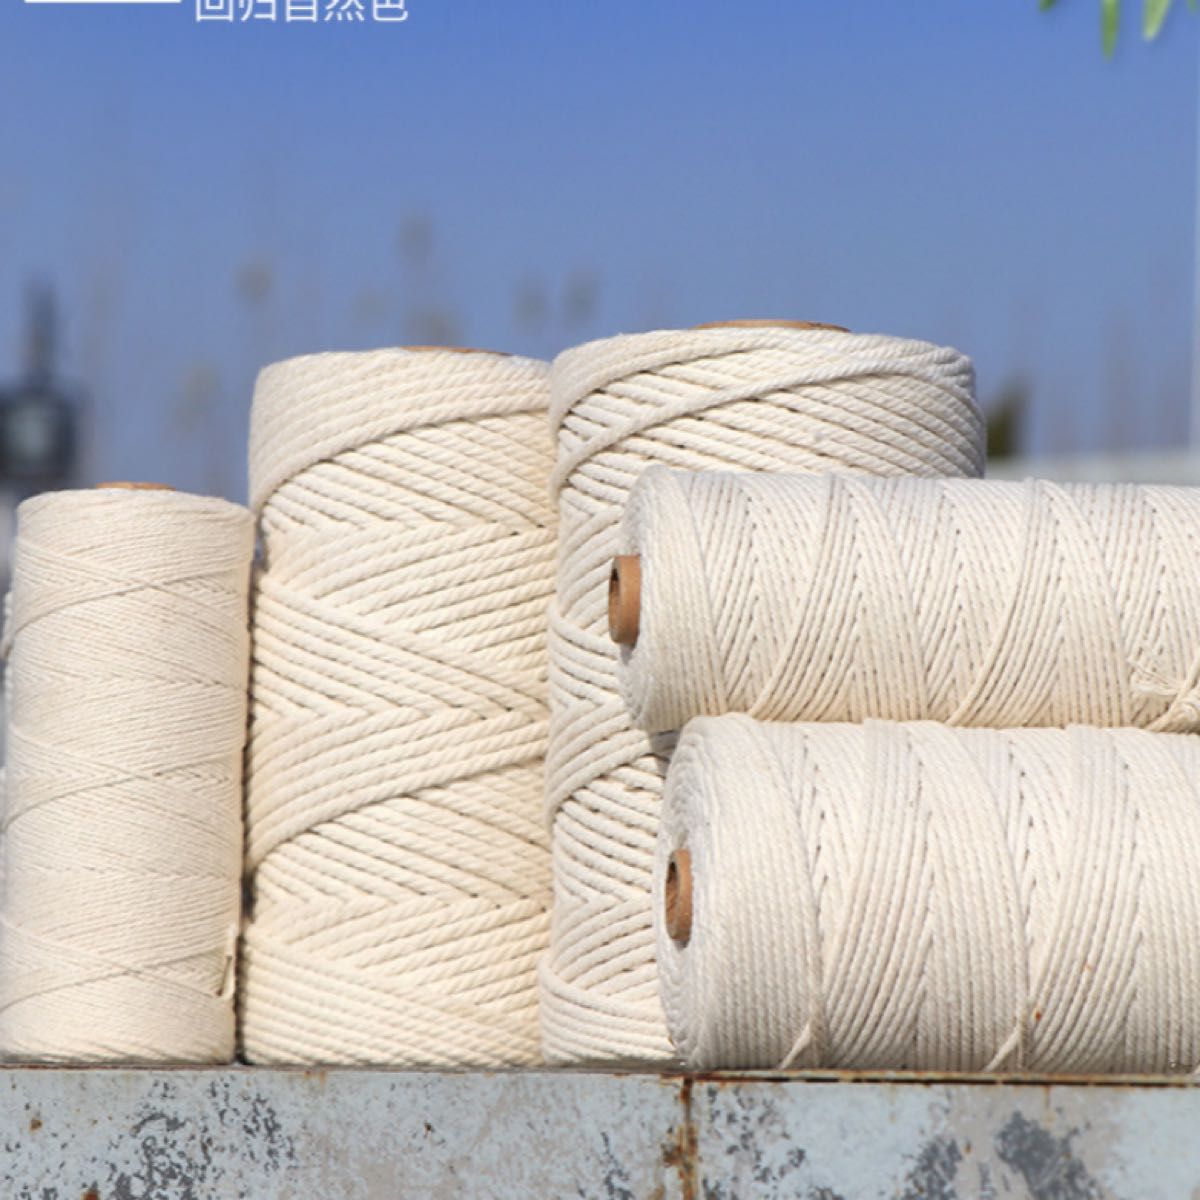 マクラメロープ セット売り マクラメ 白 ホワイト 3個セット 紐 糸 綿 編み物 ハンドメイド マクラメ 紐